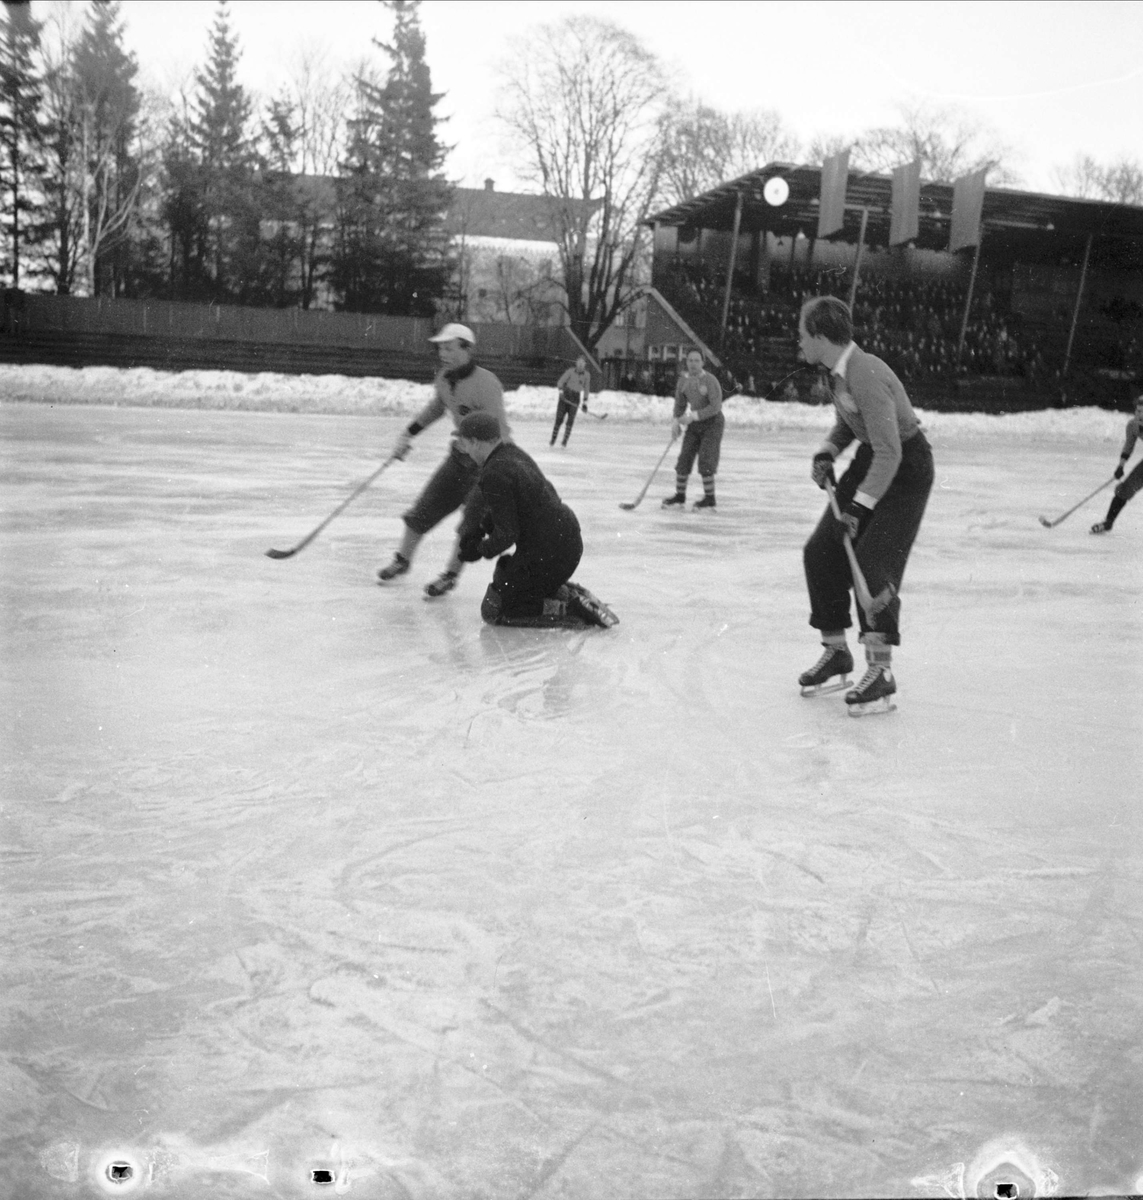 Bandy - Uppsala Högre Allmänna Läroverk (UHAL) - Norra Latin, Studenternas Idrottsplats, Uppsala 1951